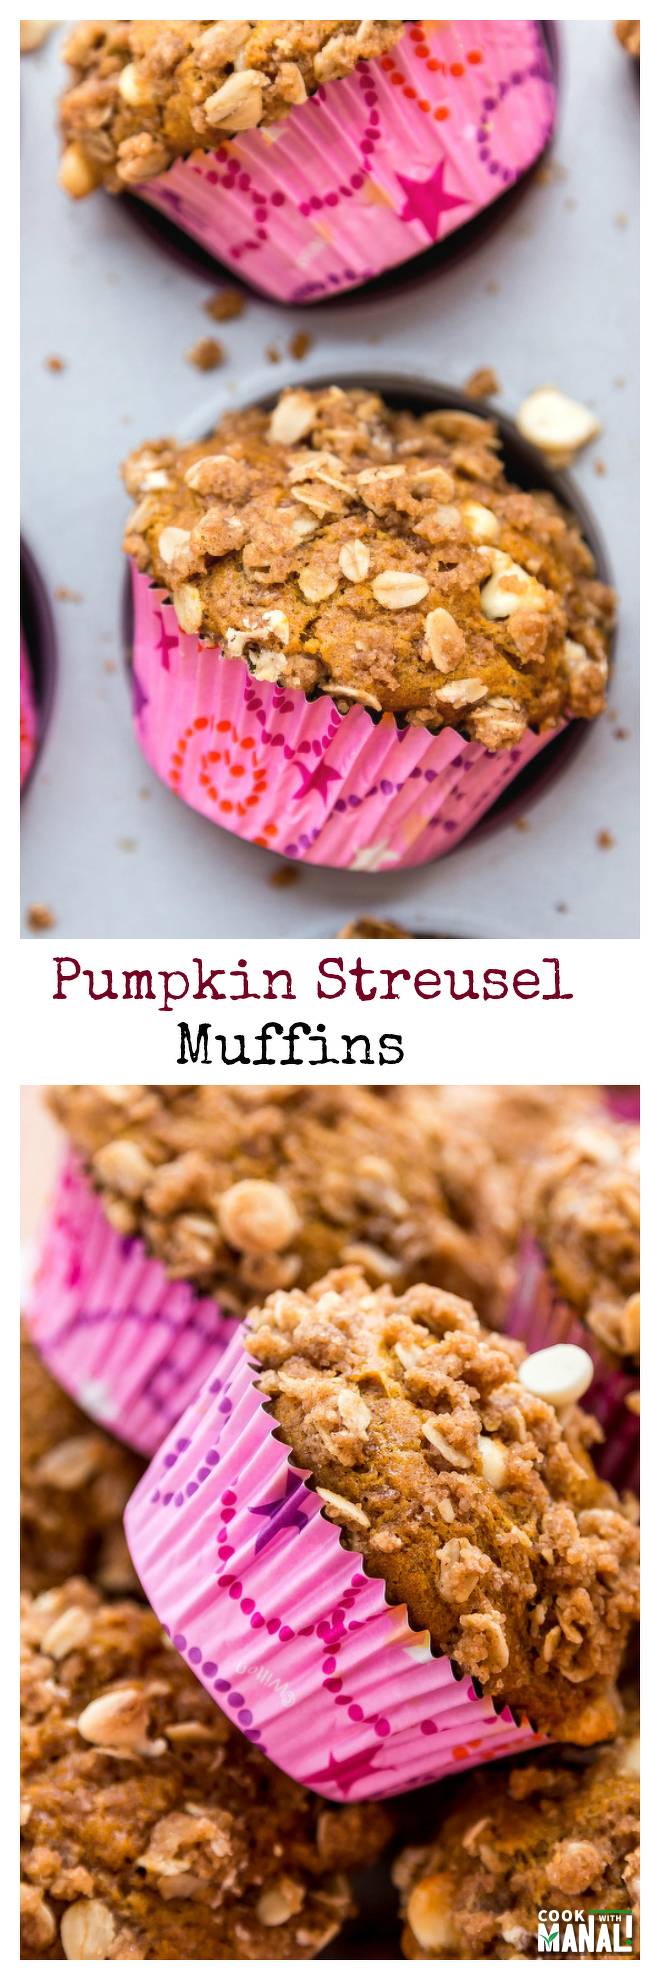 pumpkin-streusel-muffins-collage